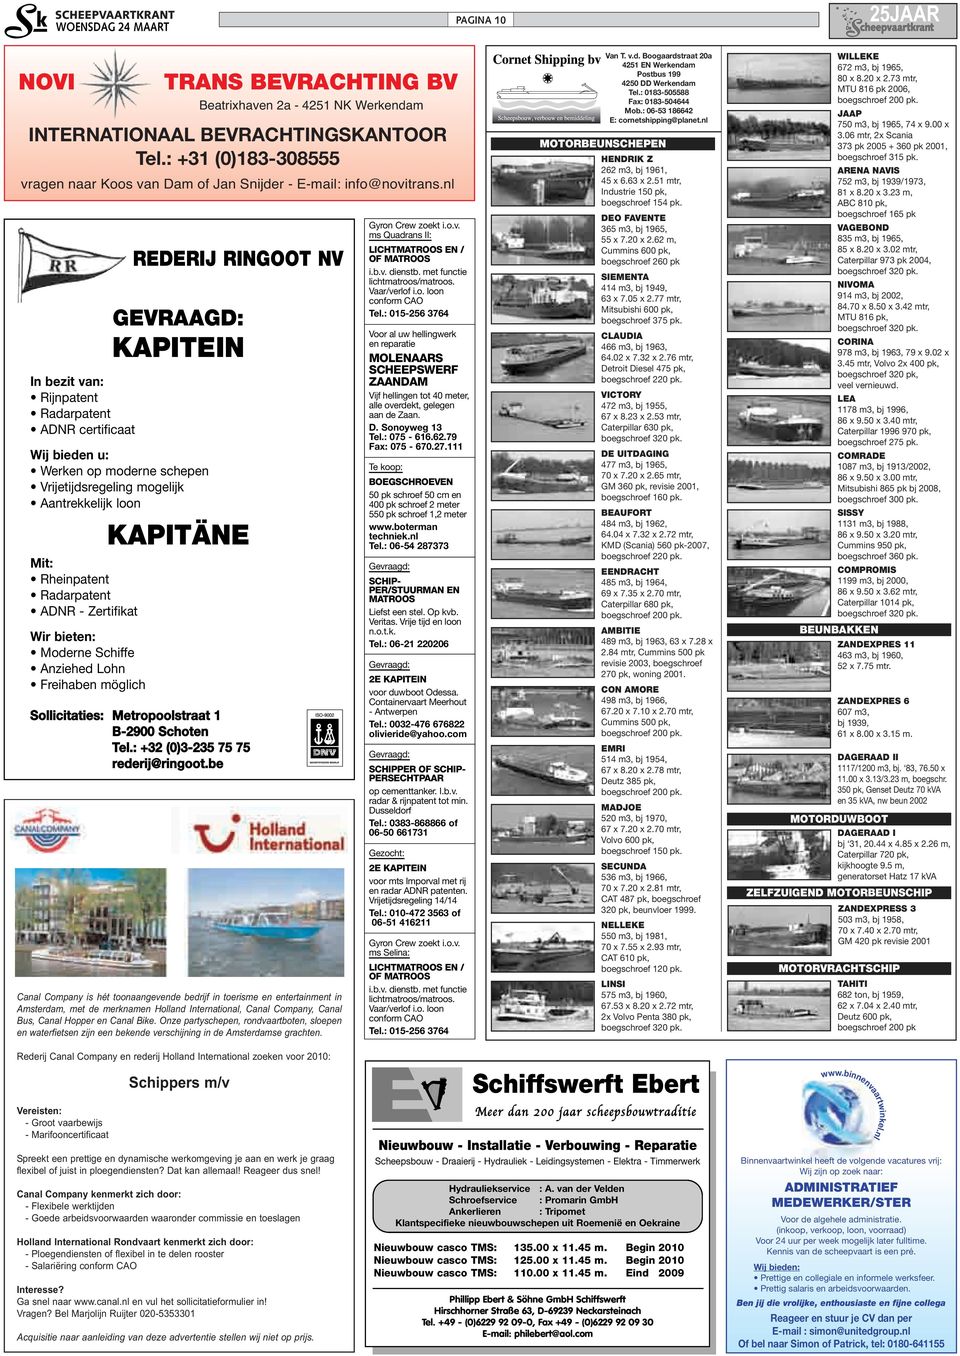 be TRANS BEVRACHTING BV Beatrixhaven 2a - 4251 NK Werkendam INTERNATIONAAL BEVRACHTINGSKANTOOR Tel.: +31 (0)183-308555 vragen naar Koos van Dam of Jan Snijder - E-mail: info@novitrans.